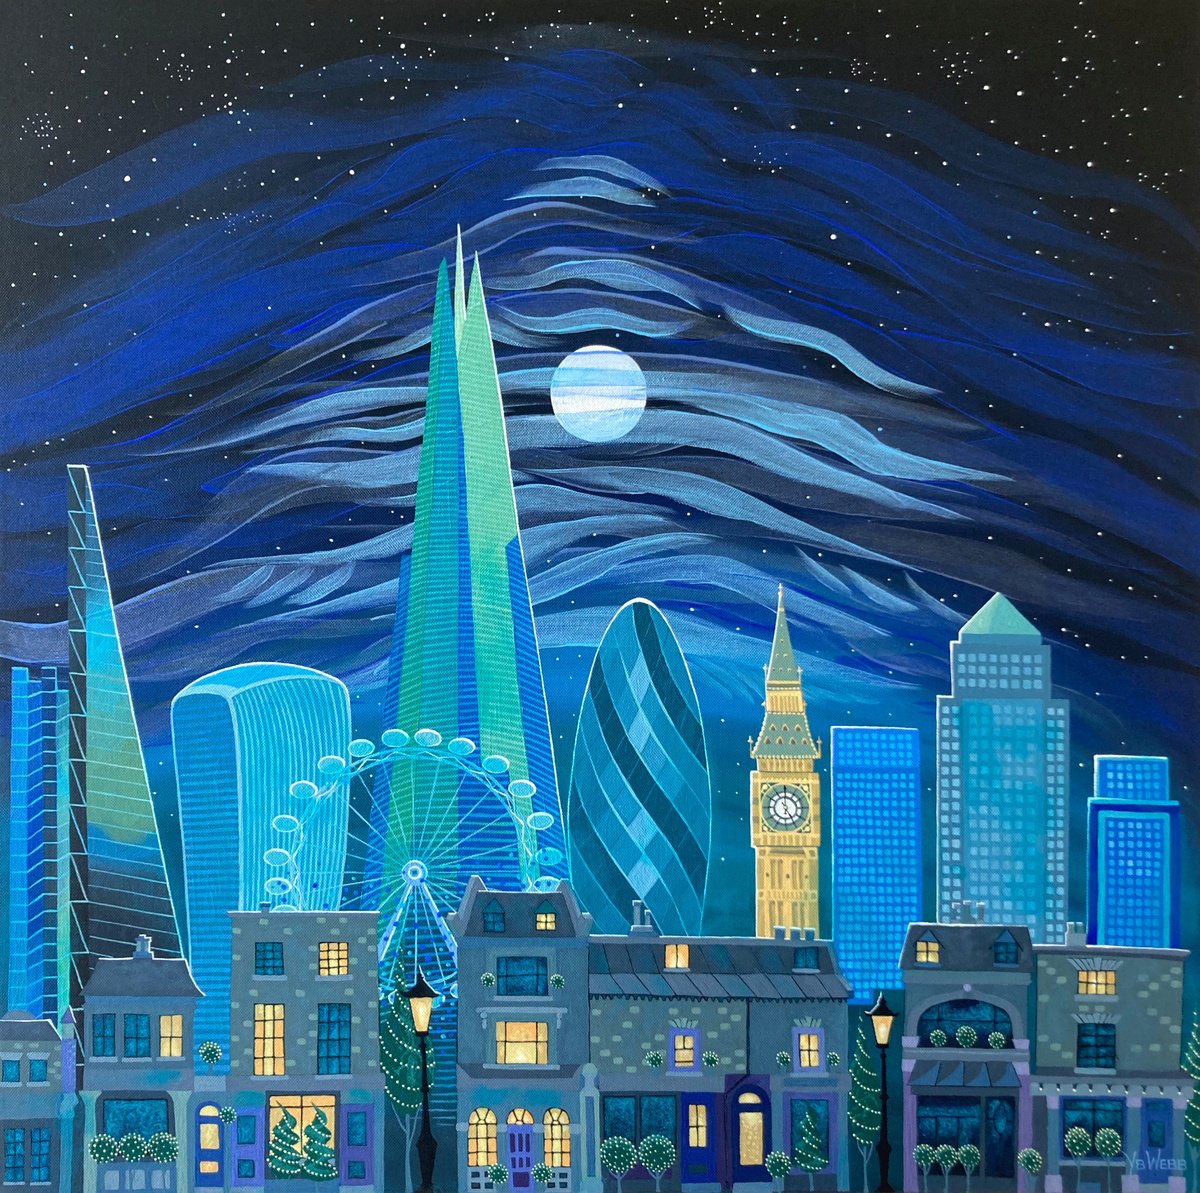 London in Moonlight by Yvonne B Webb